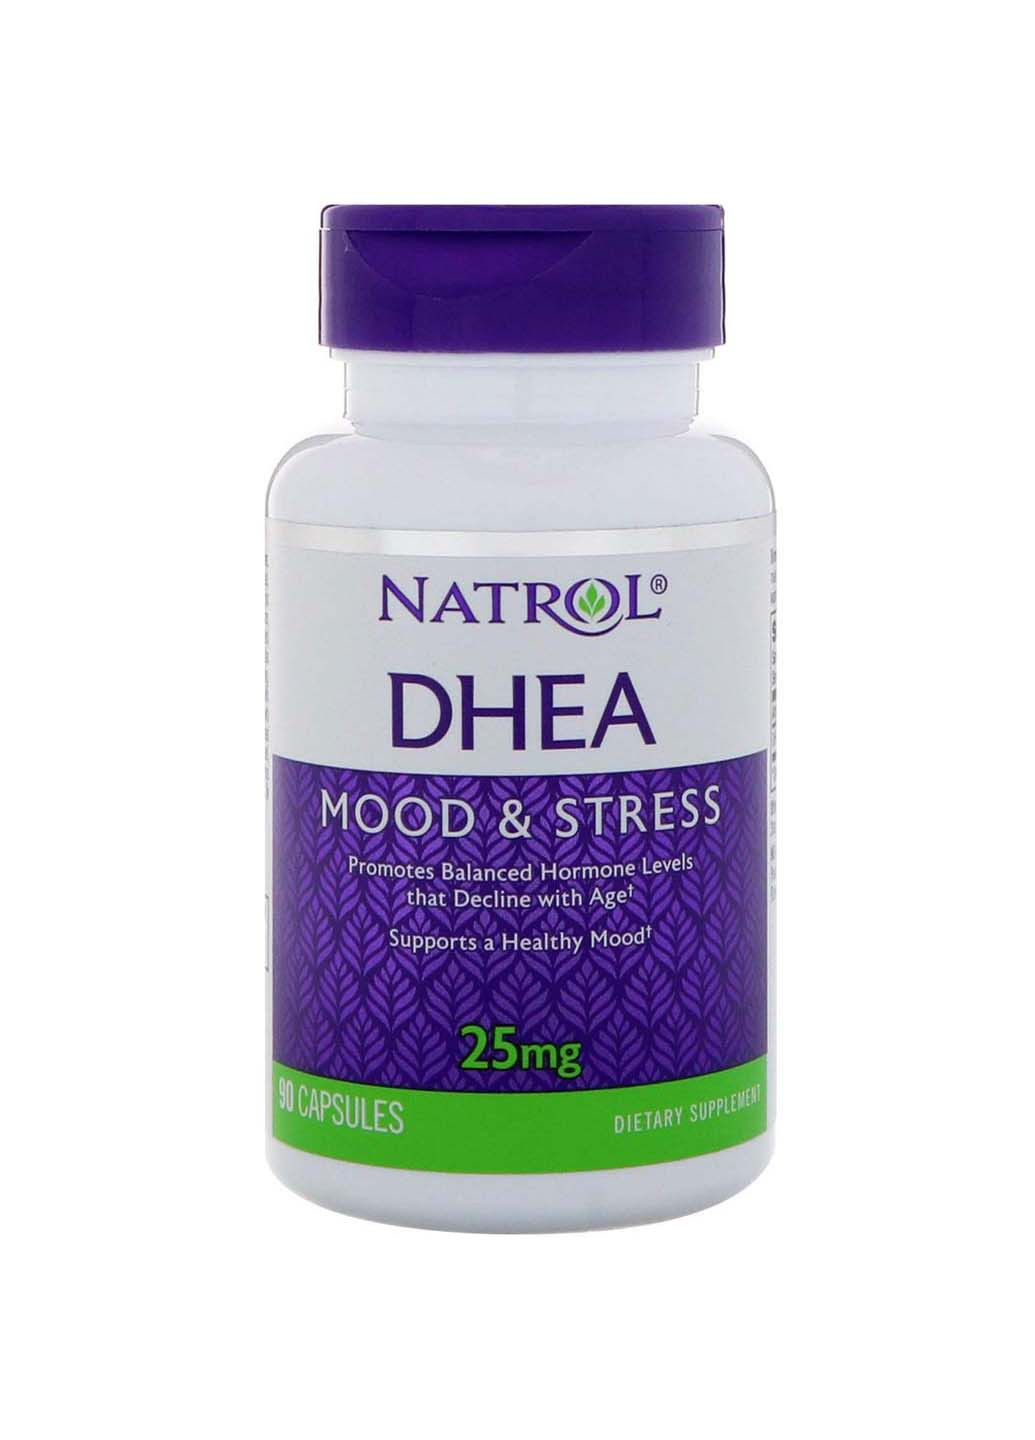 ДГЭА дегидроэпиандростерон DHEA 25 мг 90 капсул Natrol (260008320)